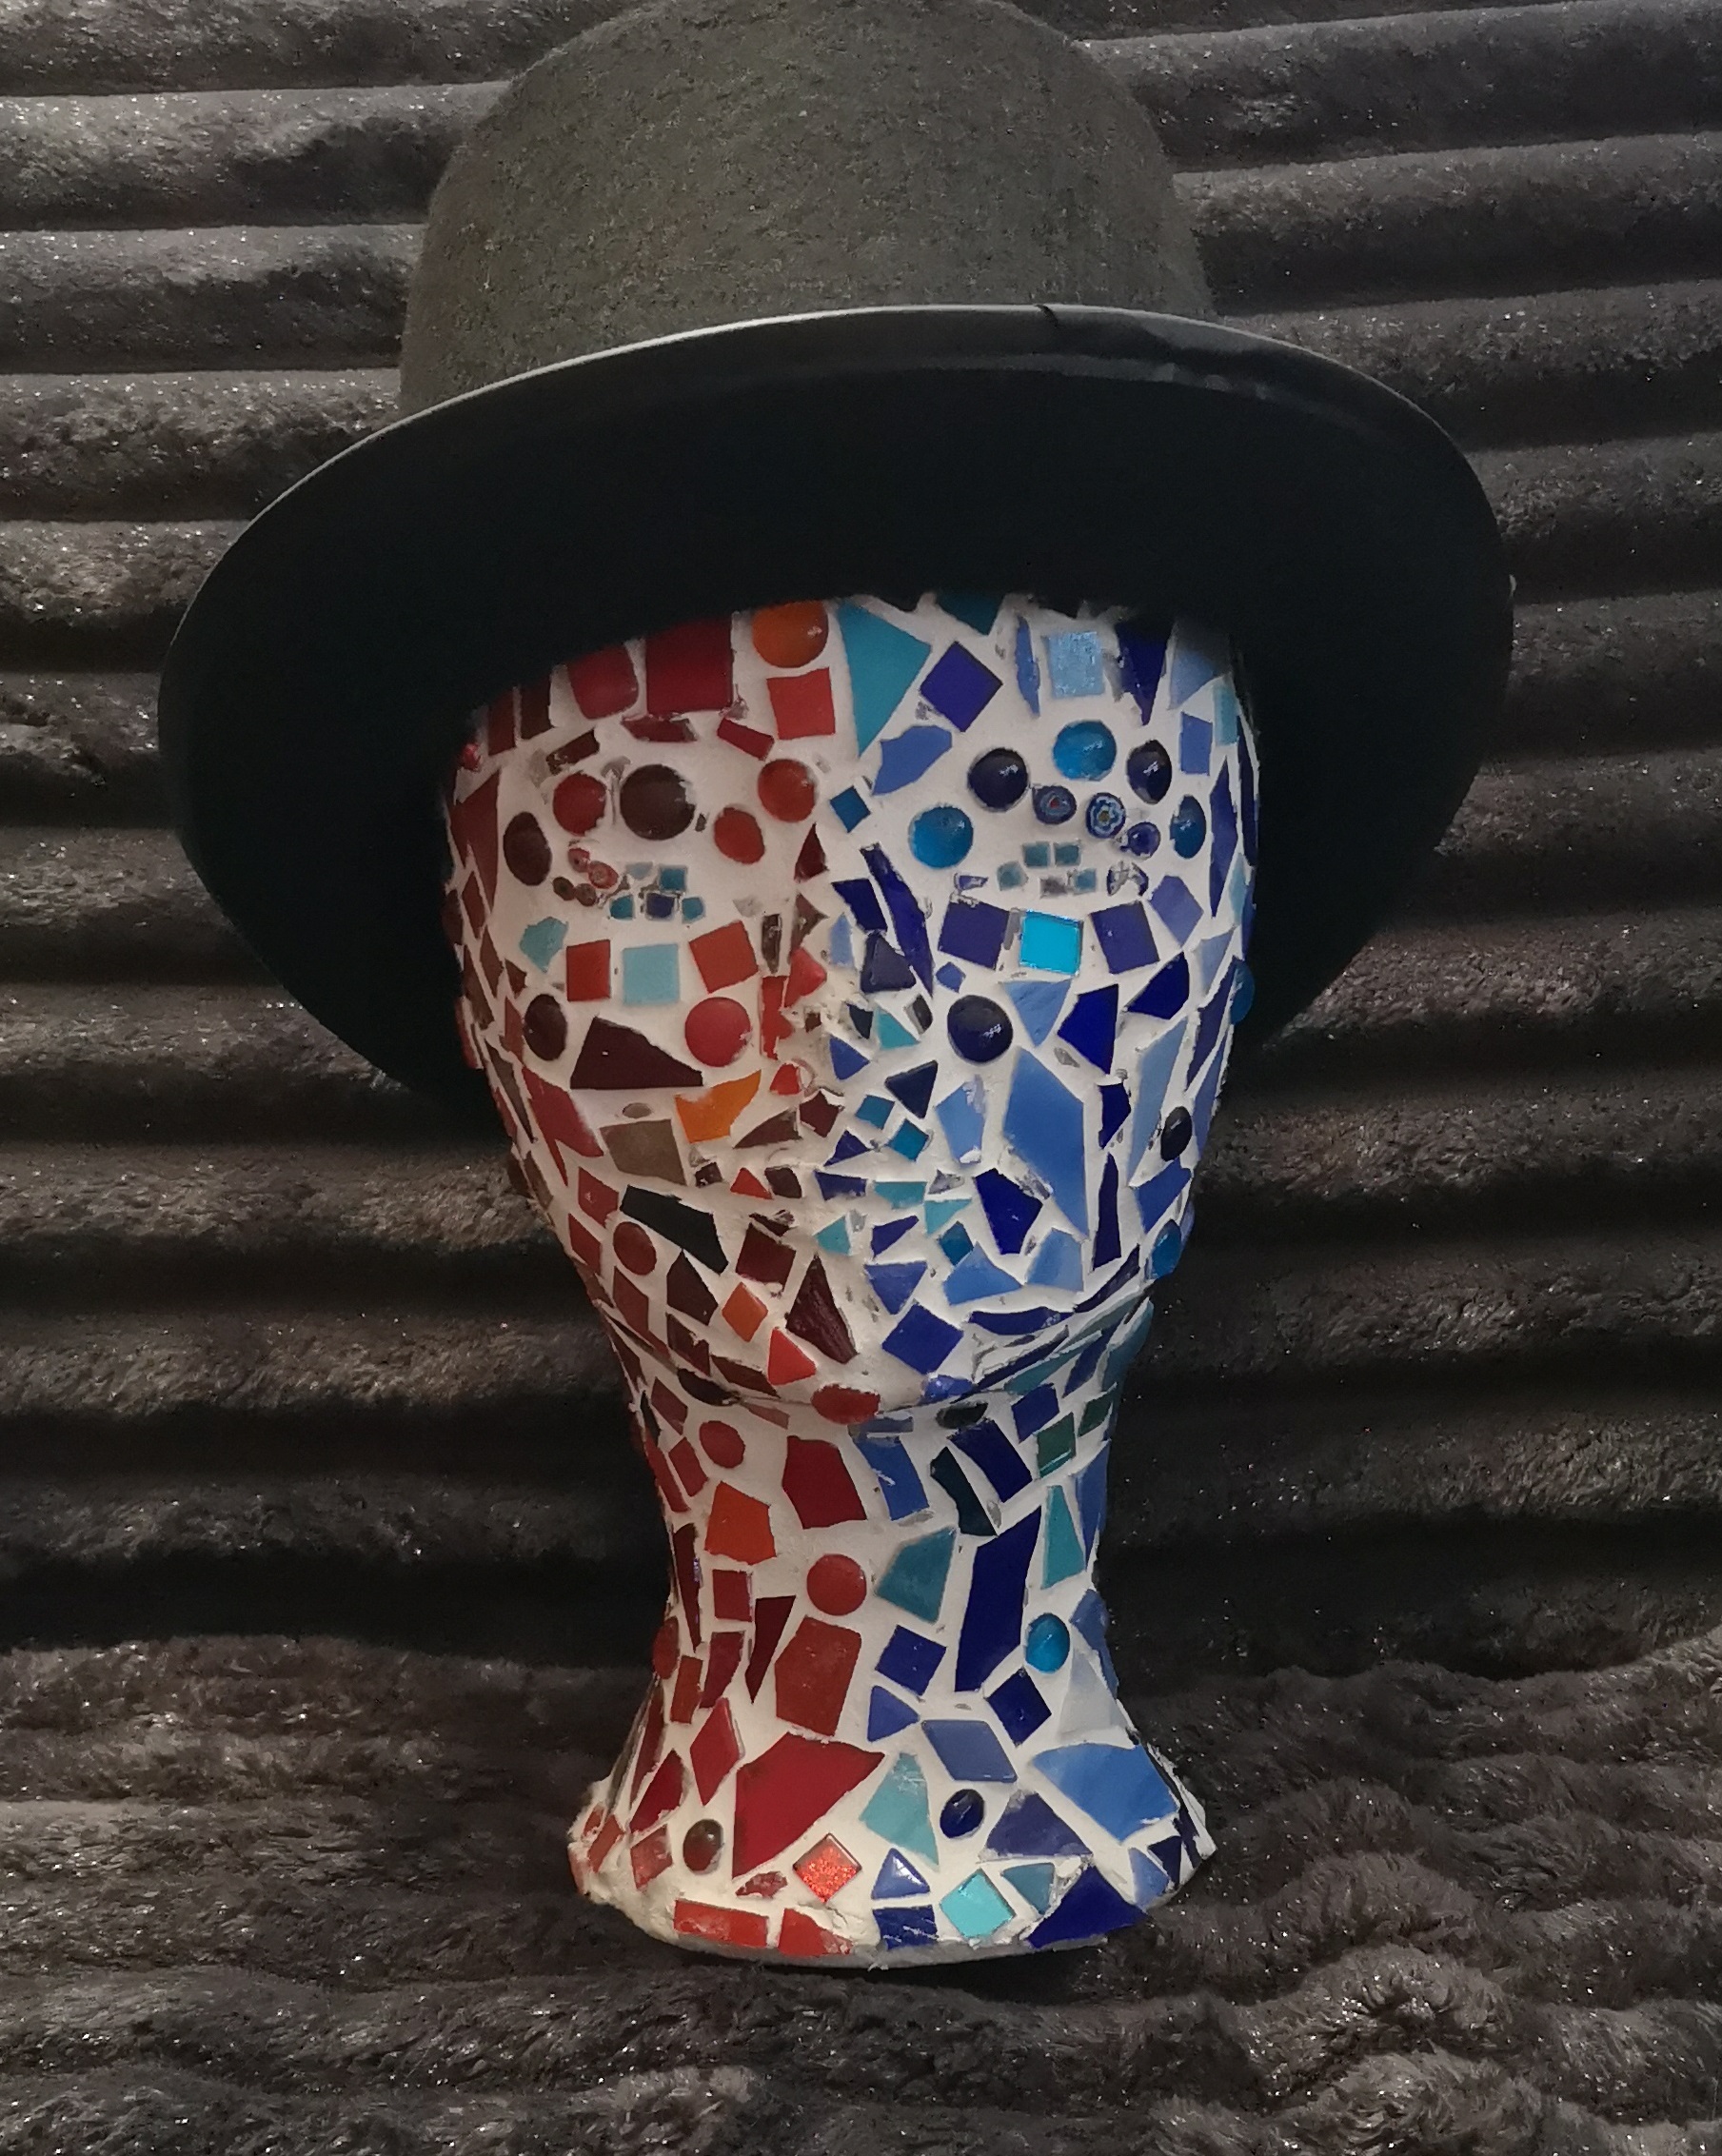 Bild eines Mosaikkopfes mit schwarzem Hut